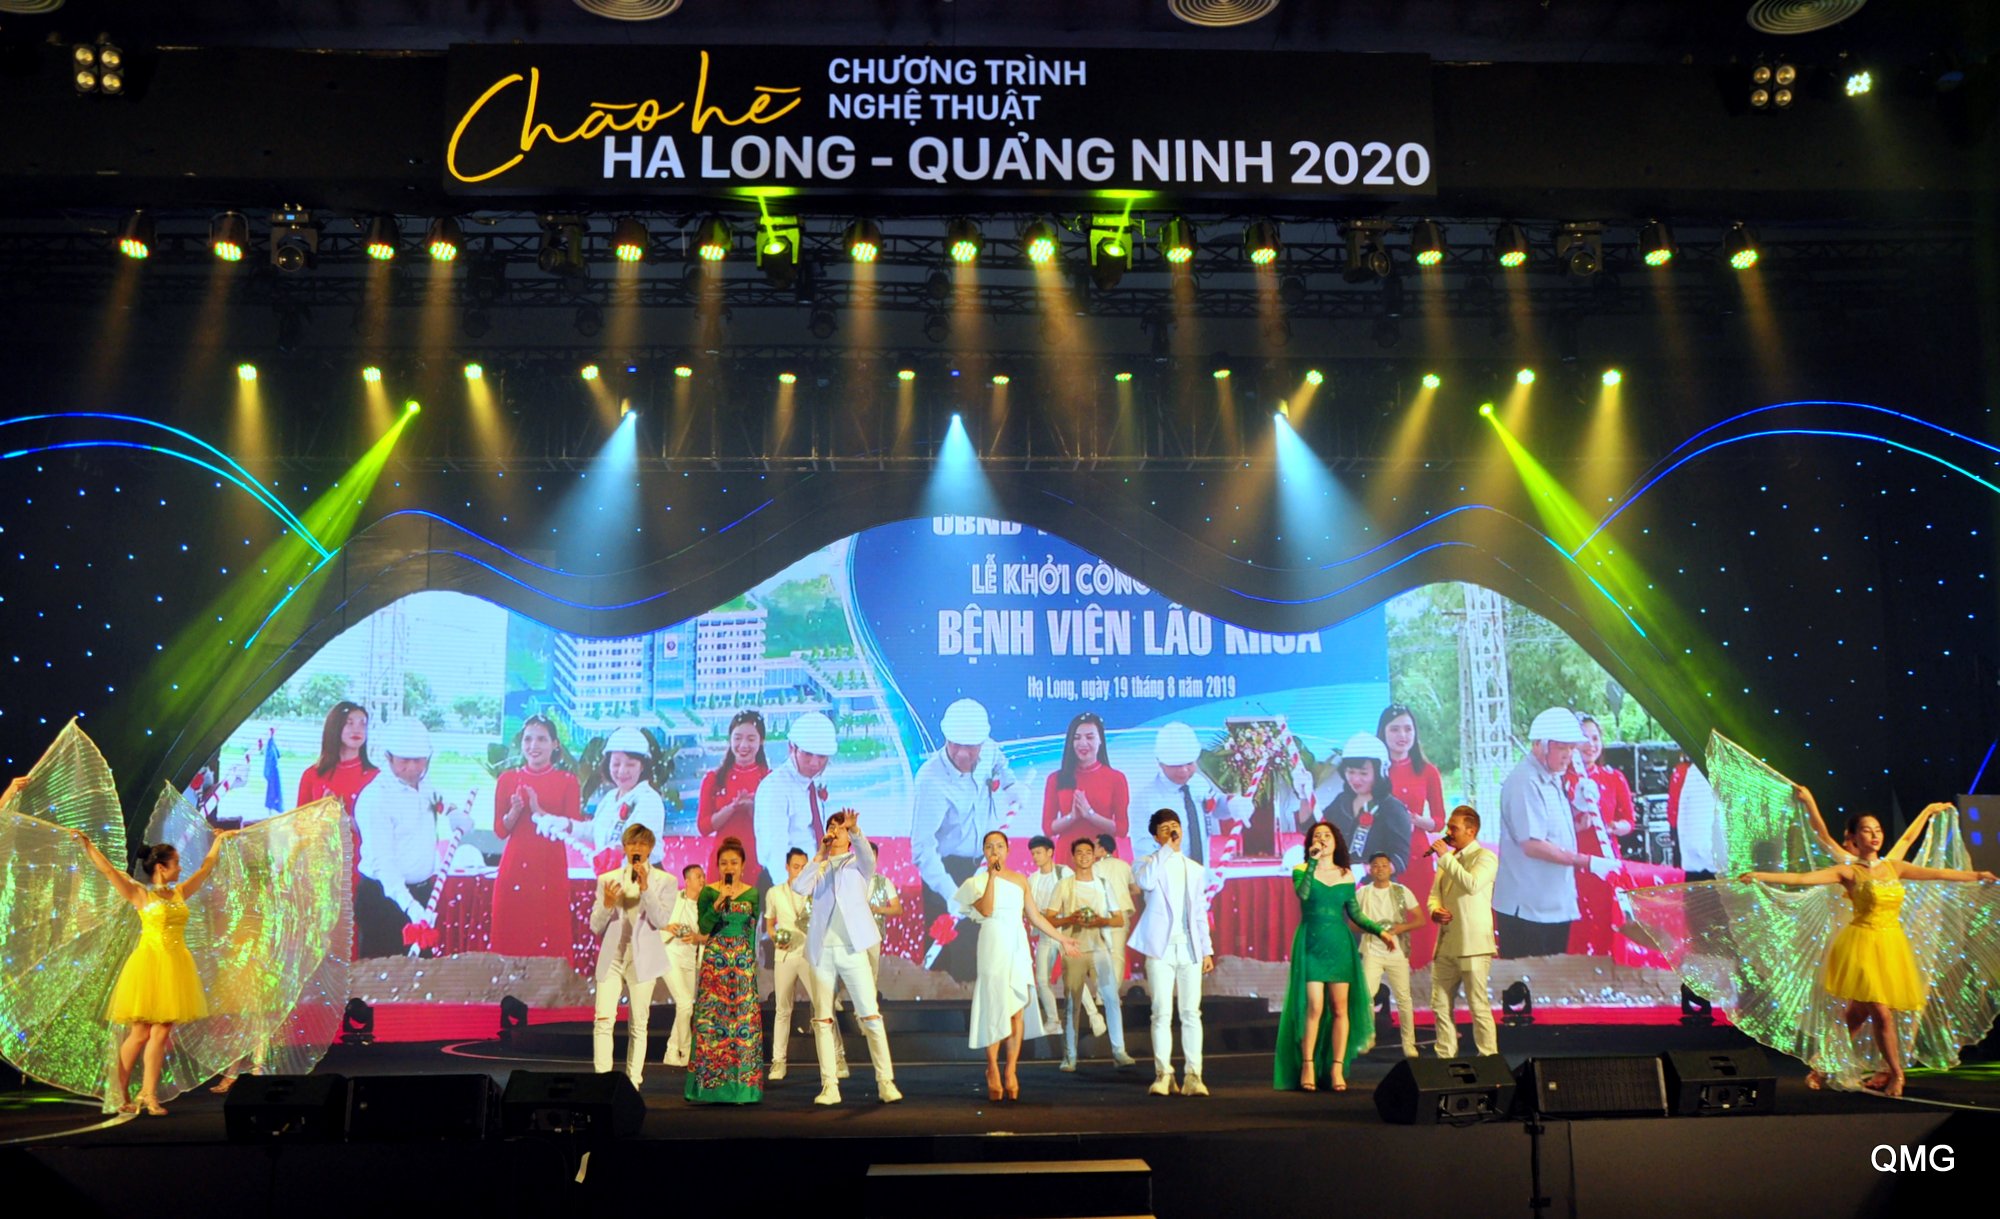 Chương trình nghệ thuật Chào Hè Hạ Long - Quảng Ninh 2020 được dàn dựng công phu, hoành tráng, rực rỡ sắc màu.